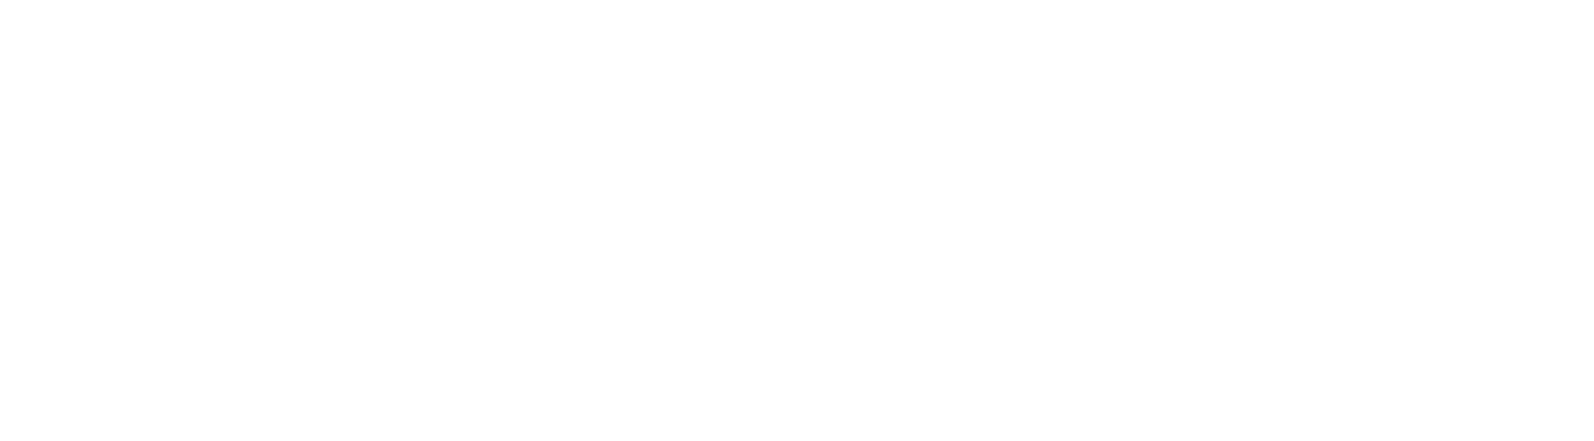 CVRx logo for dark backgrounds (transparent PNG)